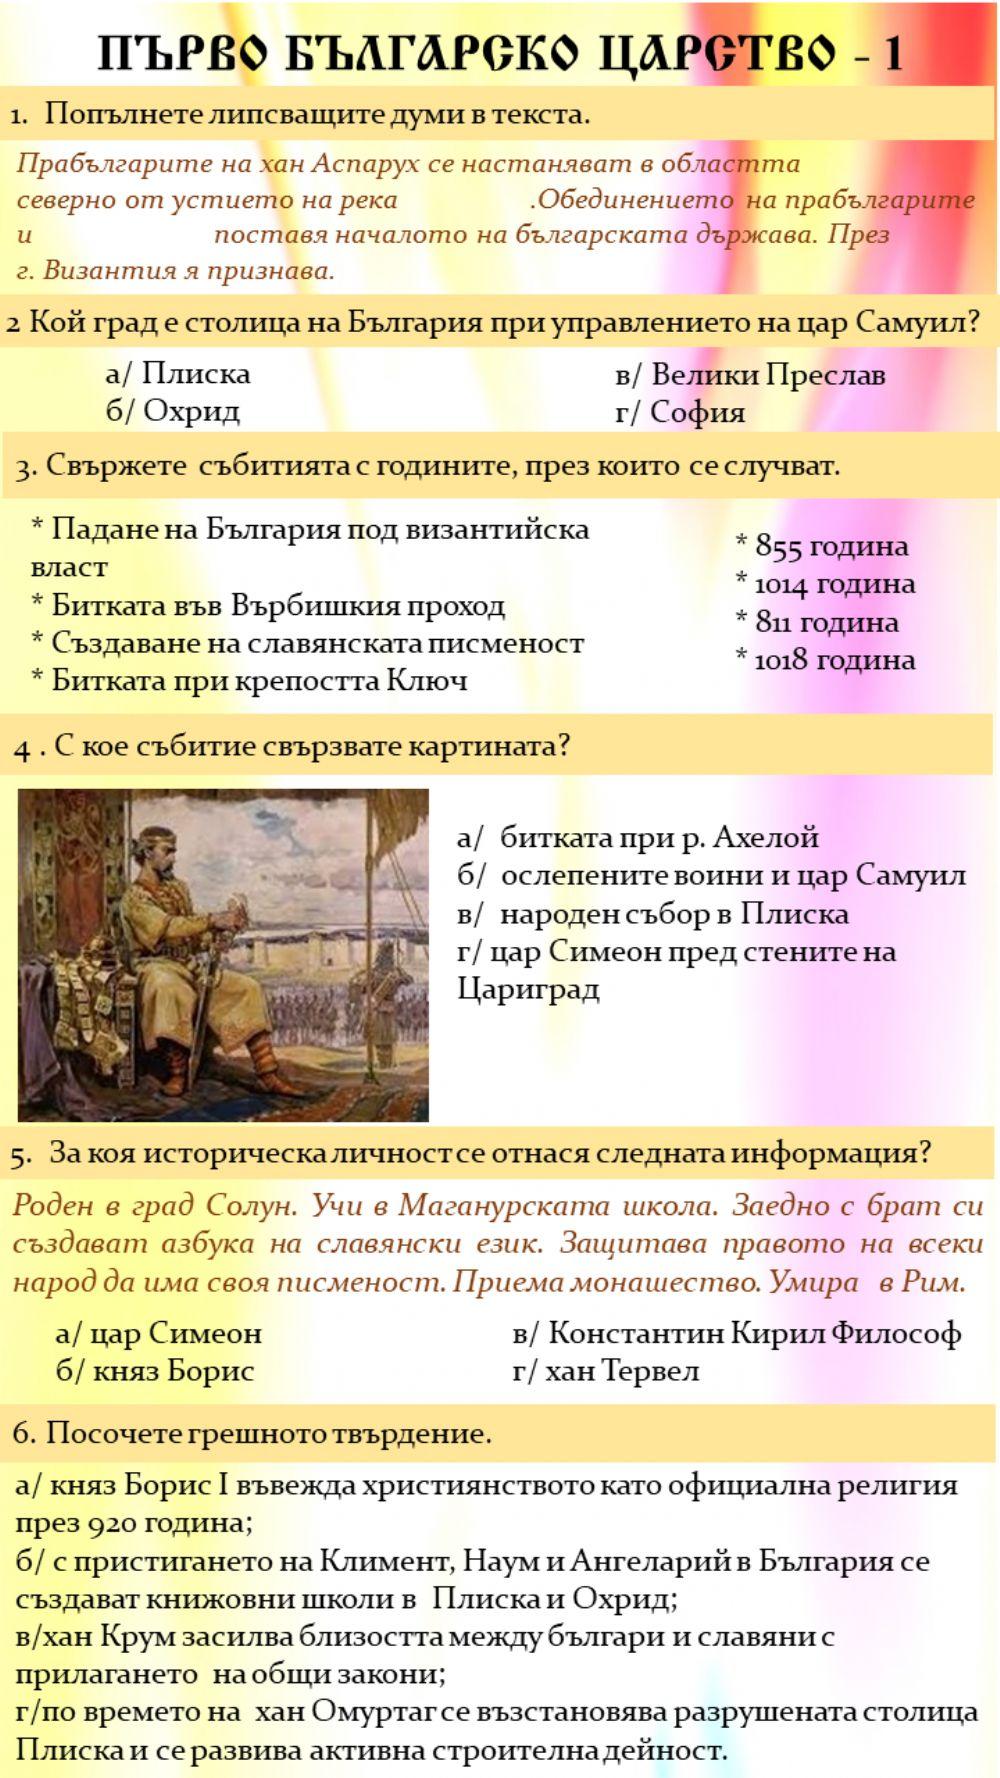 Първо българско царство - 1